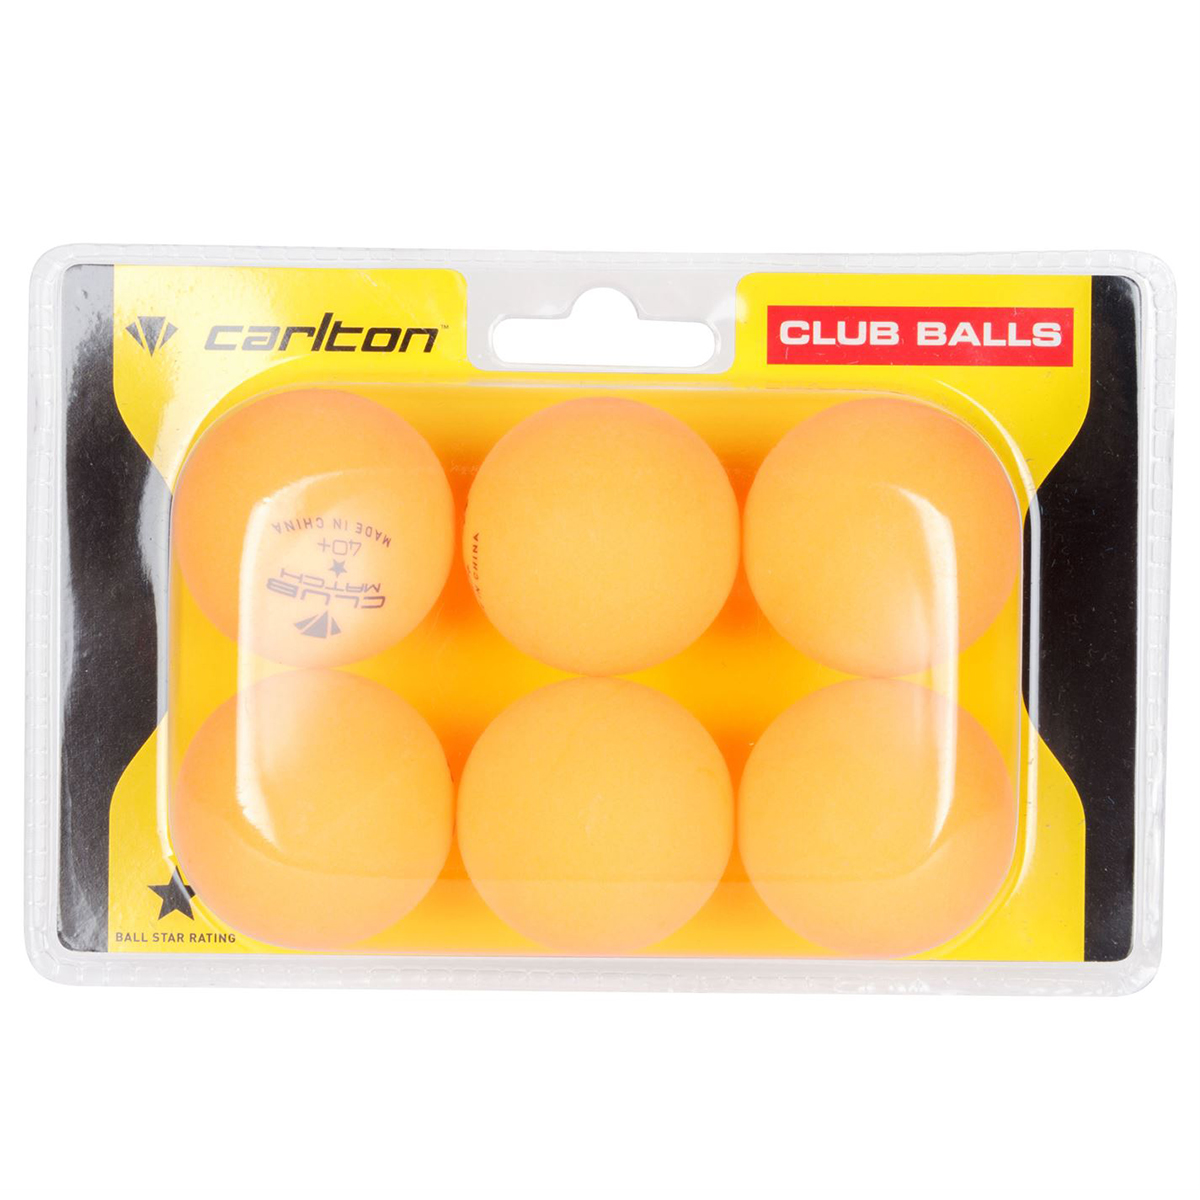 Carlton Club Table Tennis Balls, 6-Pack